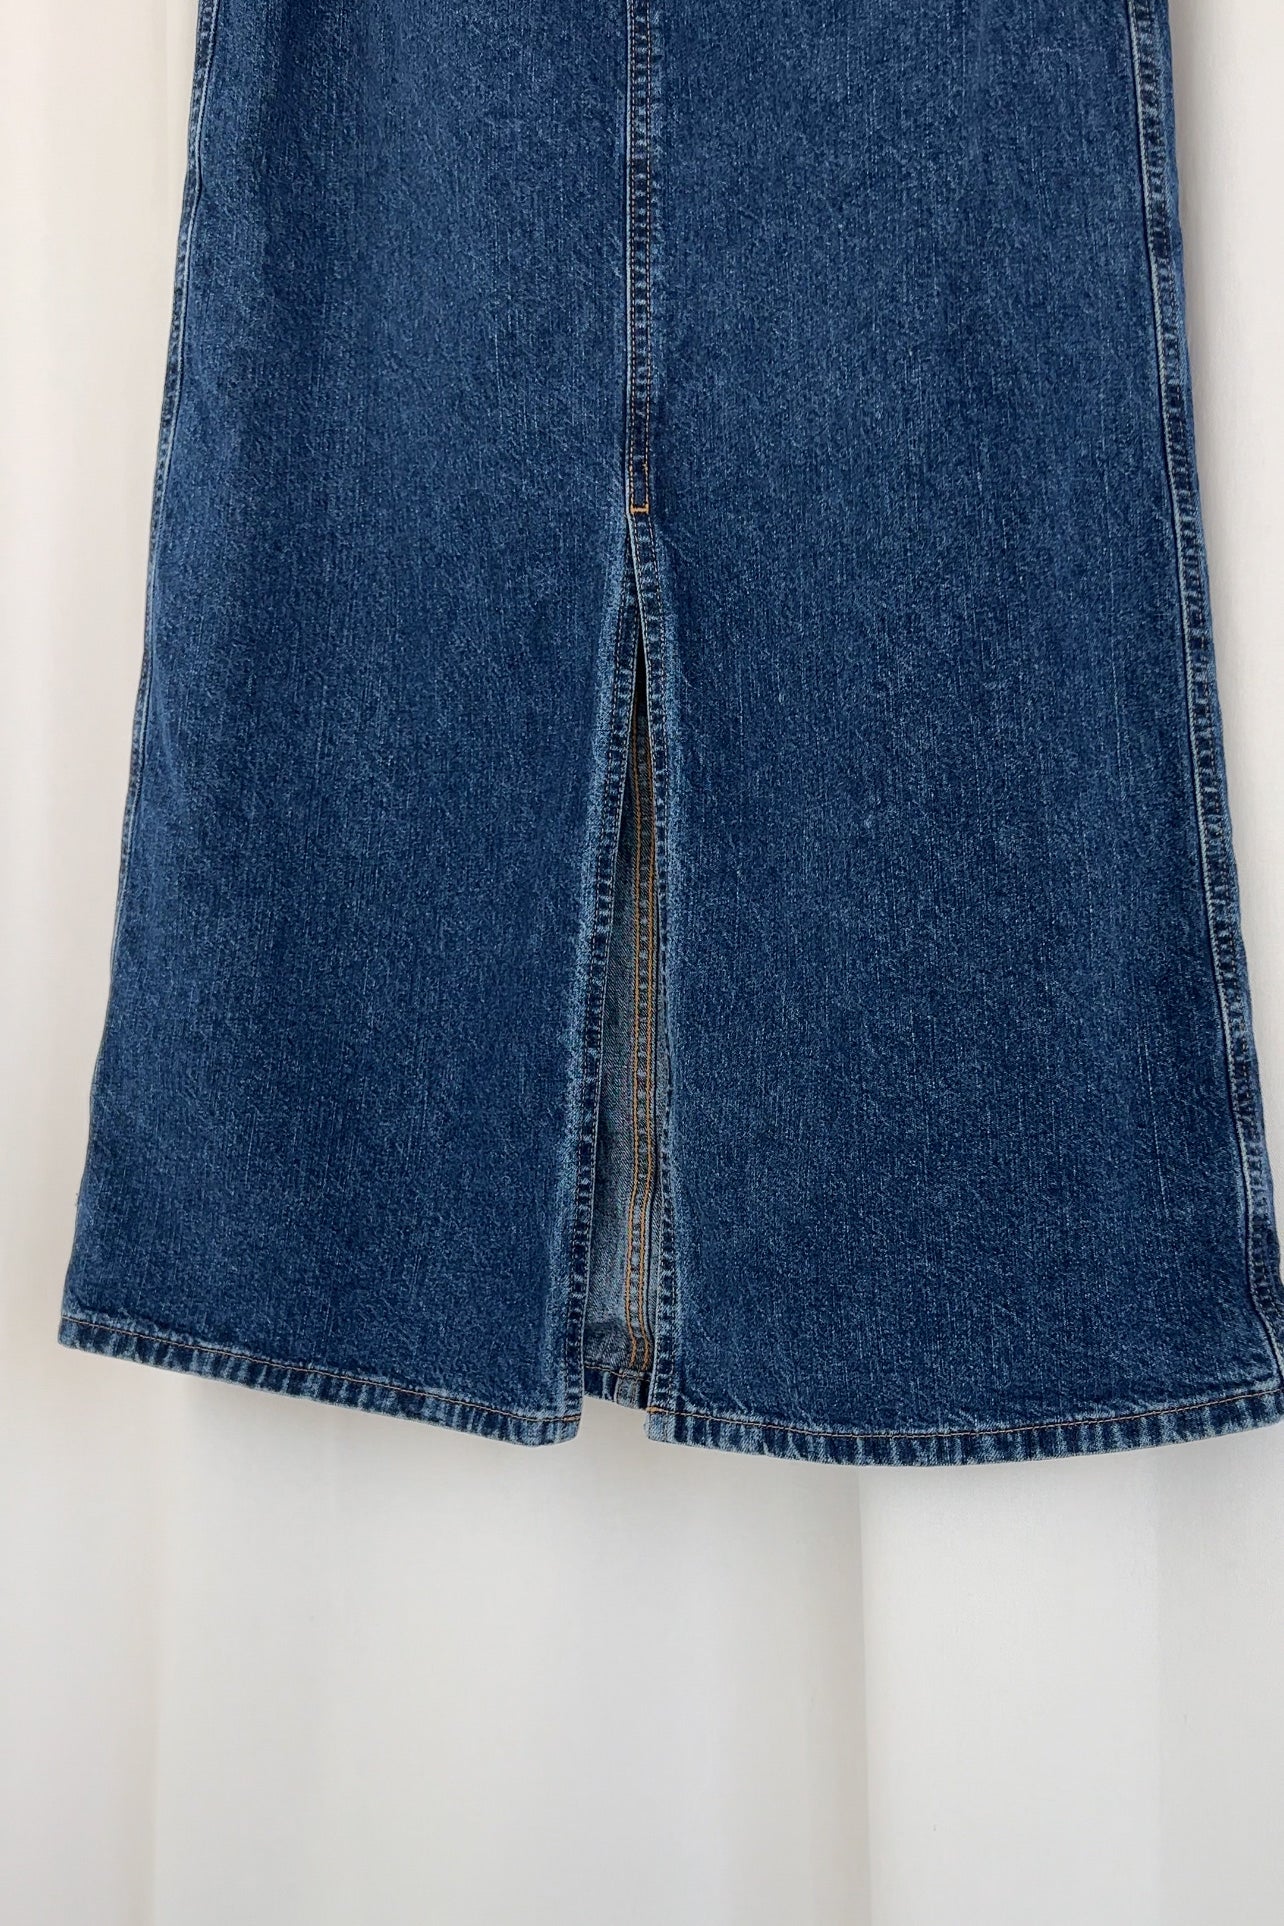 Vintage 90s Dark Wash Denim Maxi Skirt